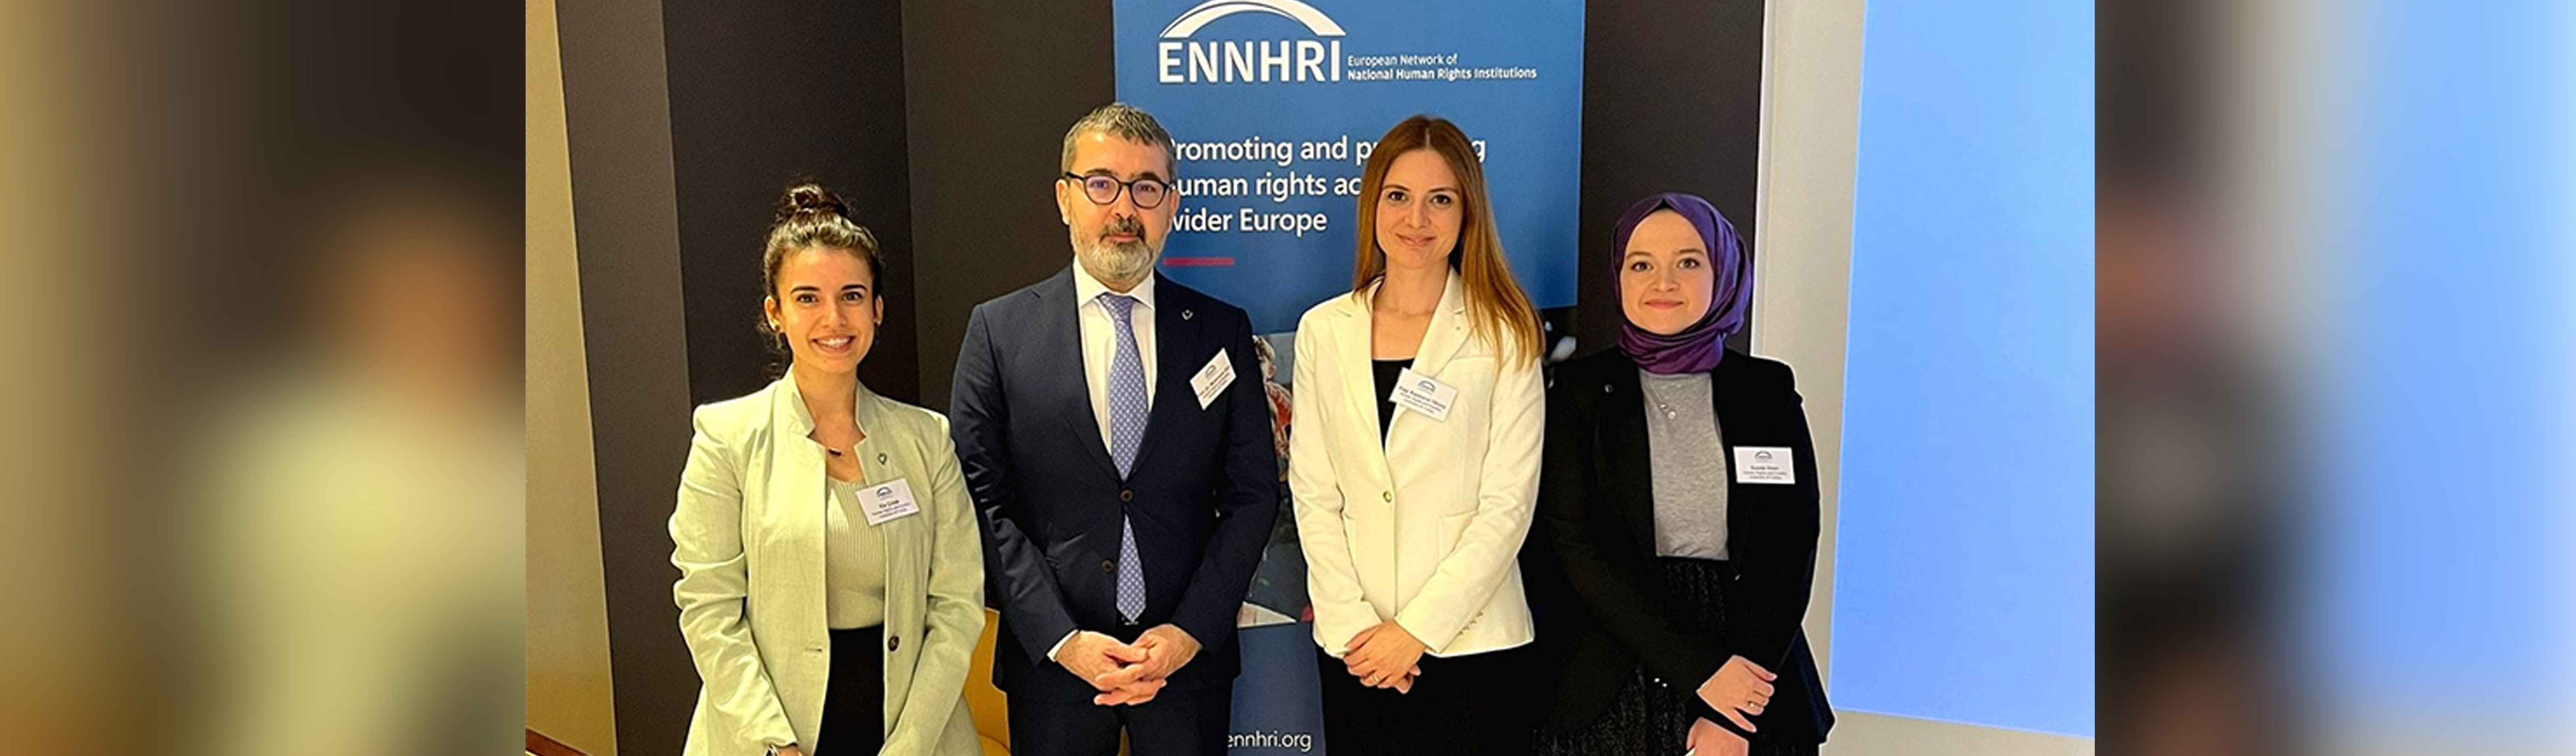 Avrupa İnsan Hakları Kurumları Ağı (ENNHRI) Genel Kurul Toplantısına Katılım